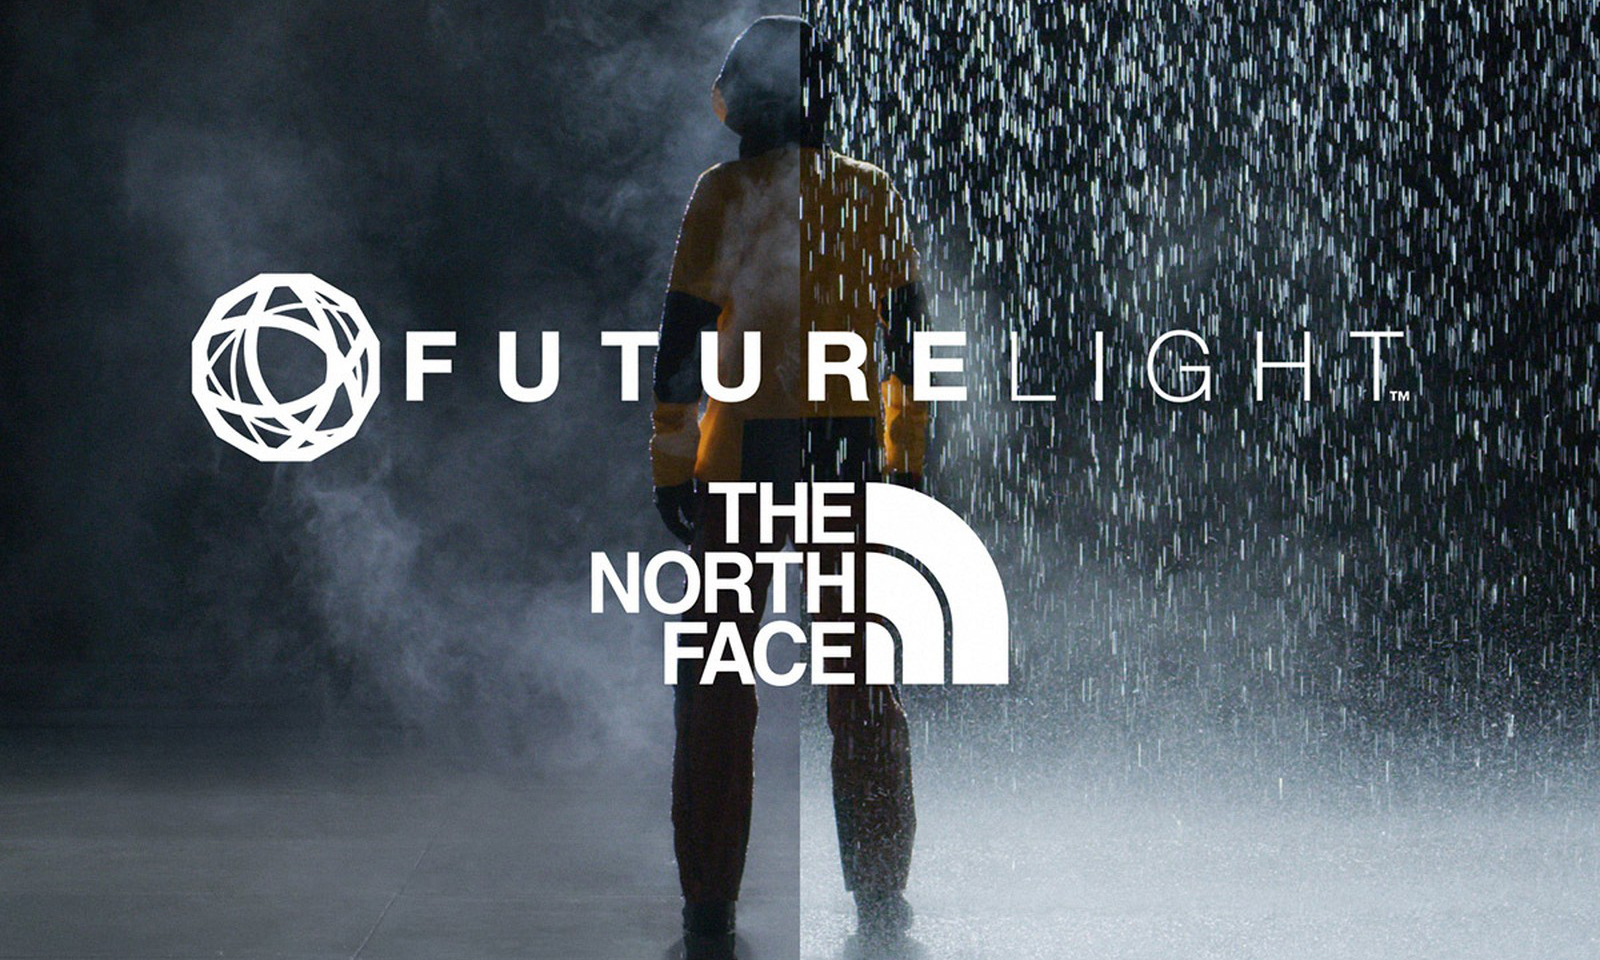 THE NORTH FACE 发布声明，停止使用 Futura 所提及的 FUTURELIGHT 商标